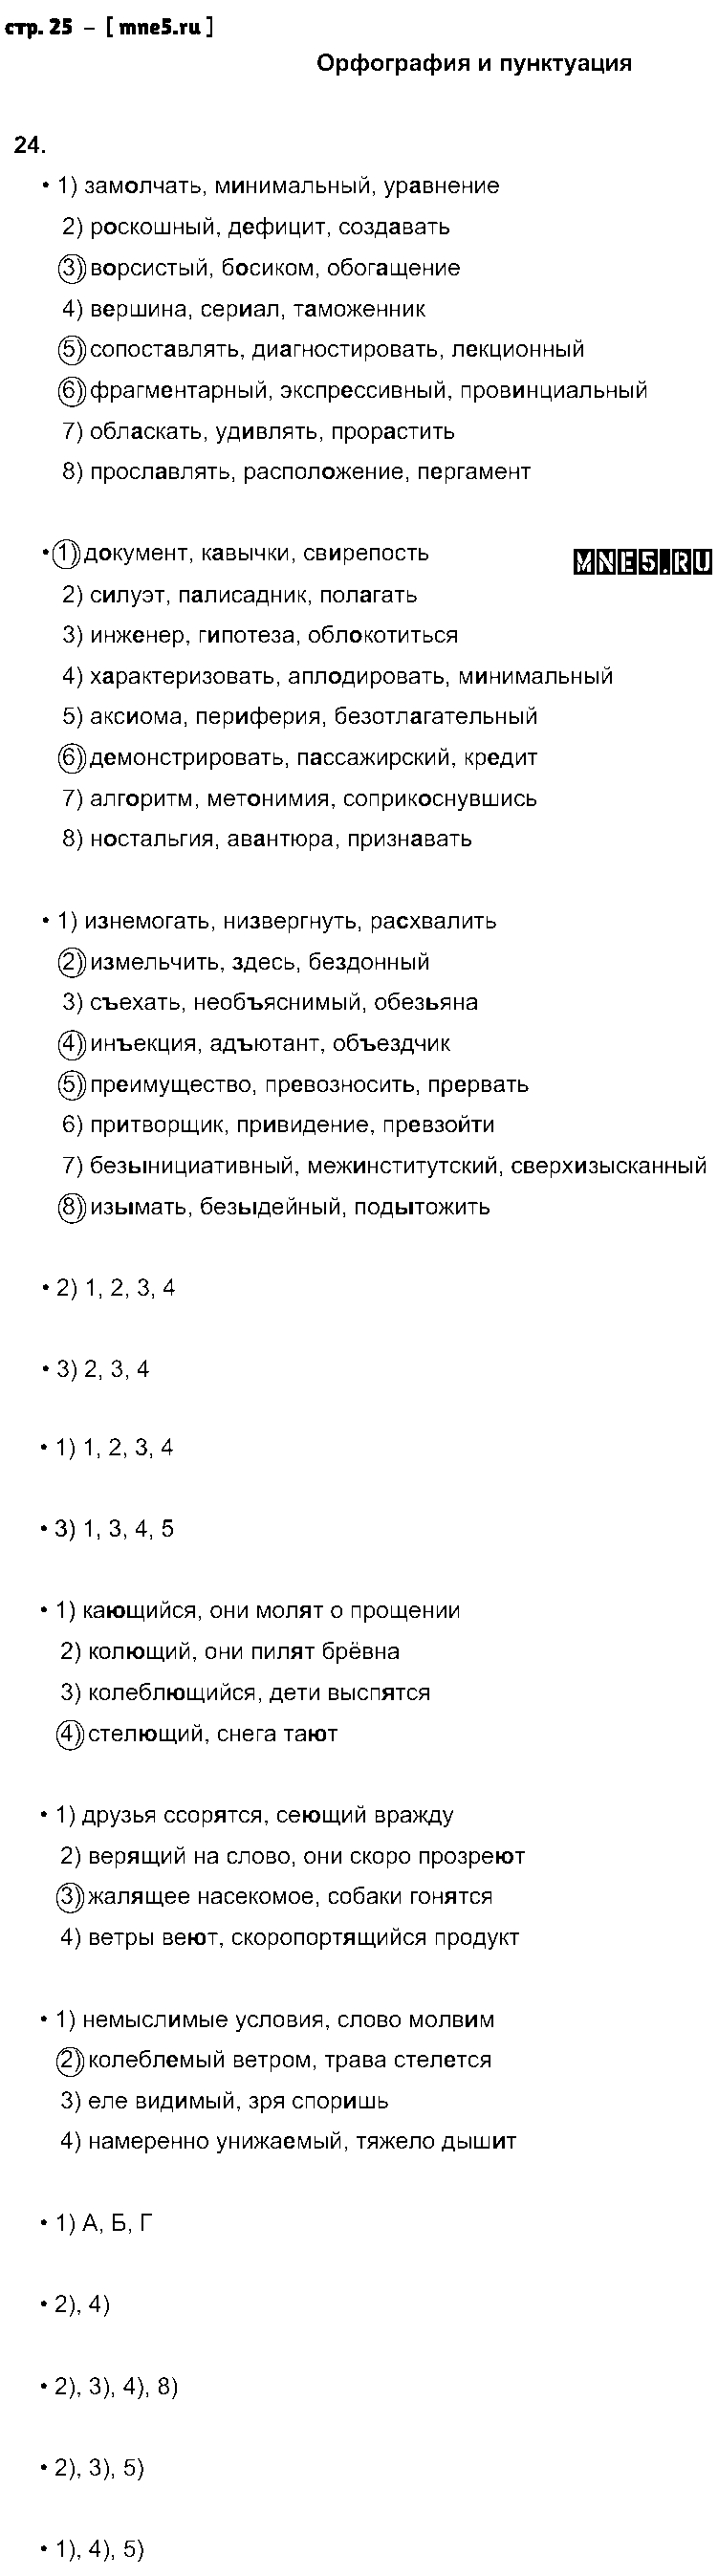 ГДЗ Русский язык 9 класс - стр. 25